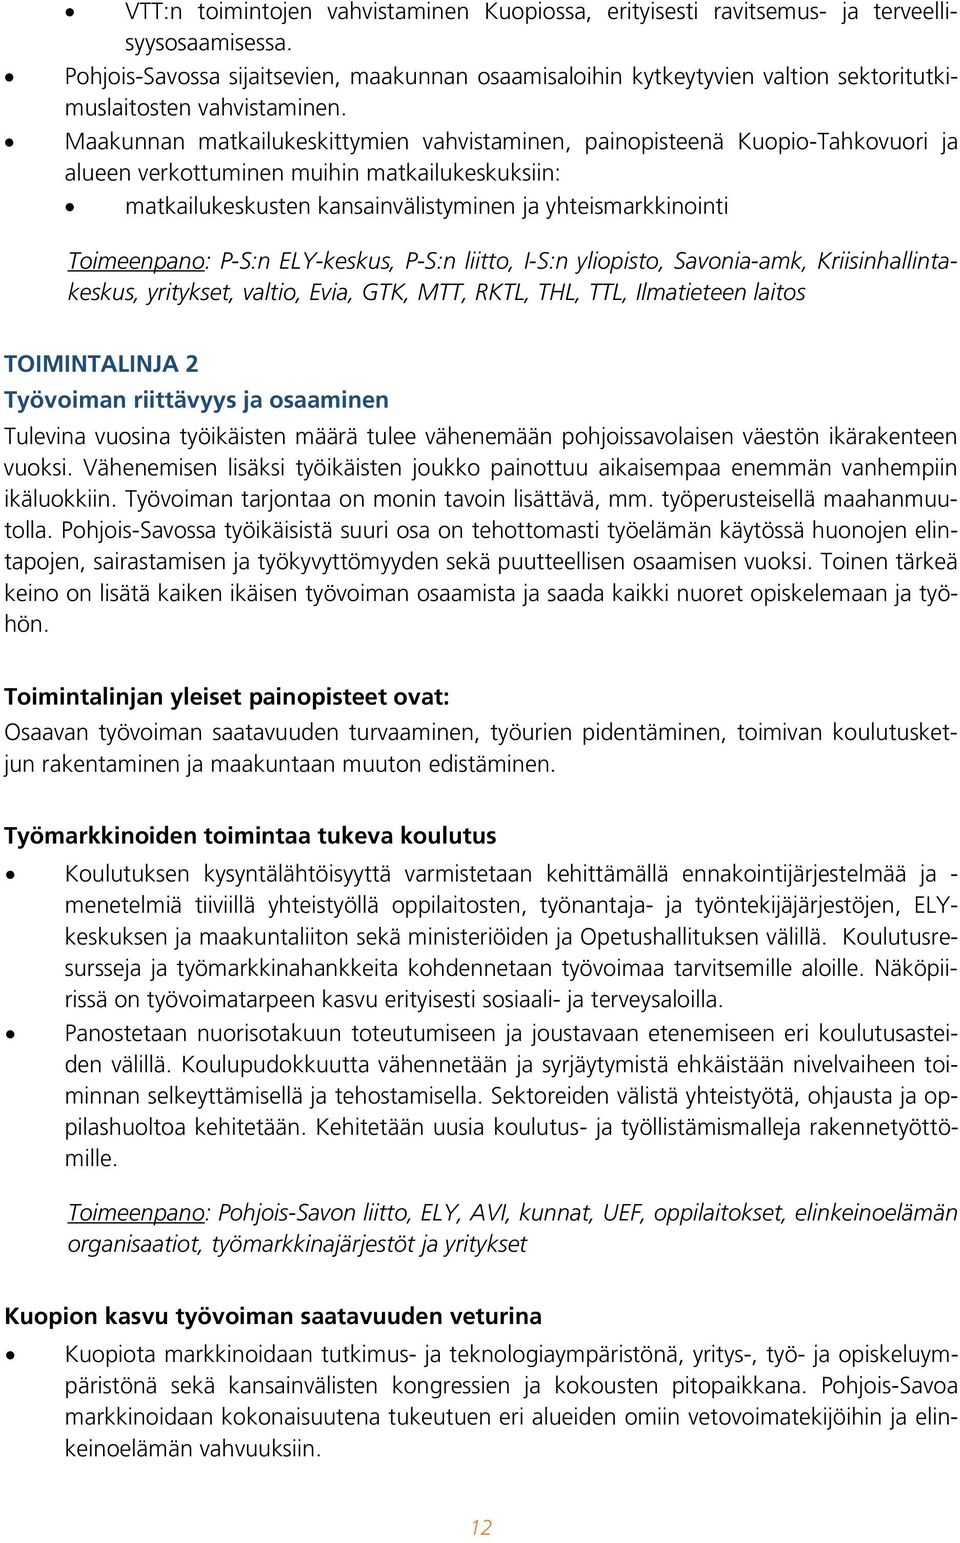 Maakunnan matkailukeskittymien vahvistaminen, painopisteenä Kuopio-Tahkovuori ja alueen verkottuminen muihin matkailukeskuksiin: matkailukeskusten kansainvälistyminen ja yhteismarkkinointi